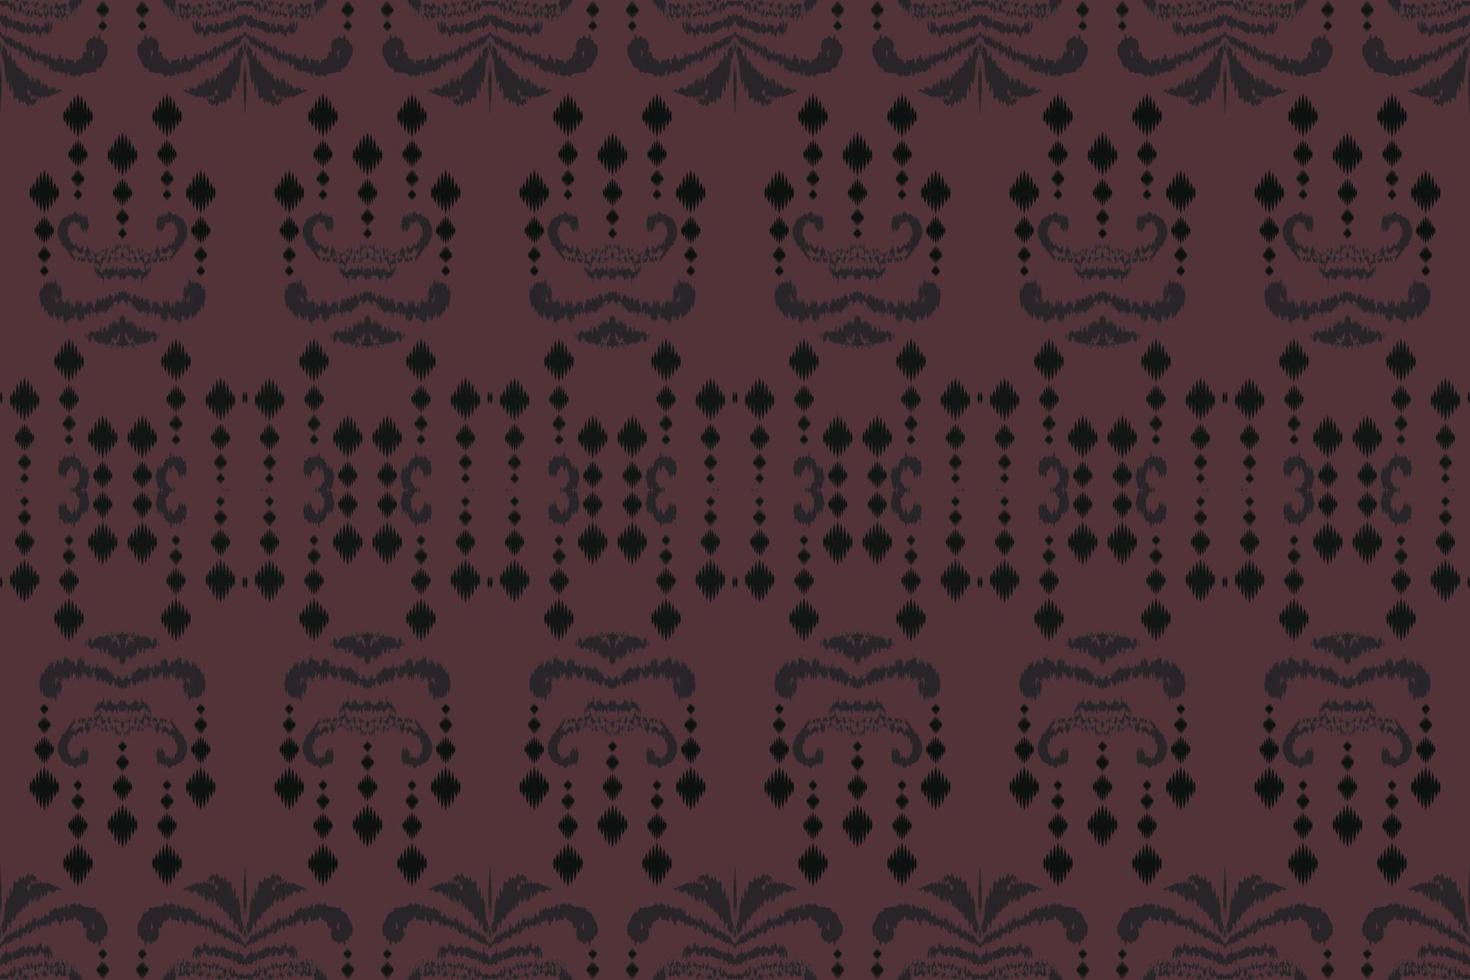 etnico ikat telaio batik tessile senza soluzione di continuità modello digitale vettore design per Stampa saree Kurti Borneo tessuto confine spazzola simboli campioni elegante